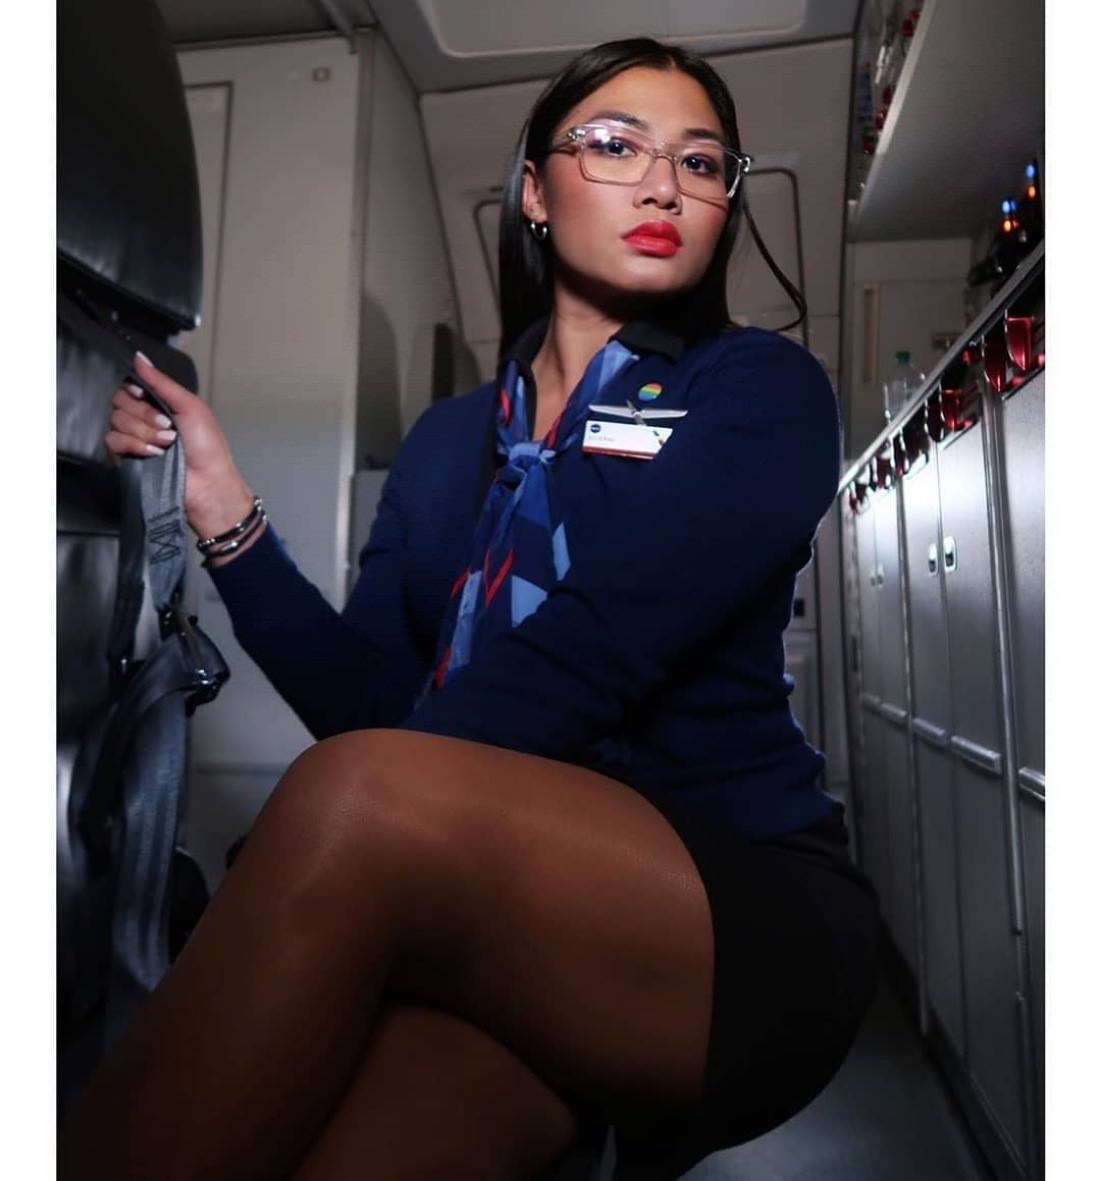 Стюардессы-проститутки в частном самолете